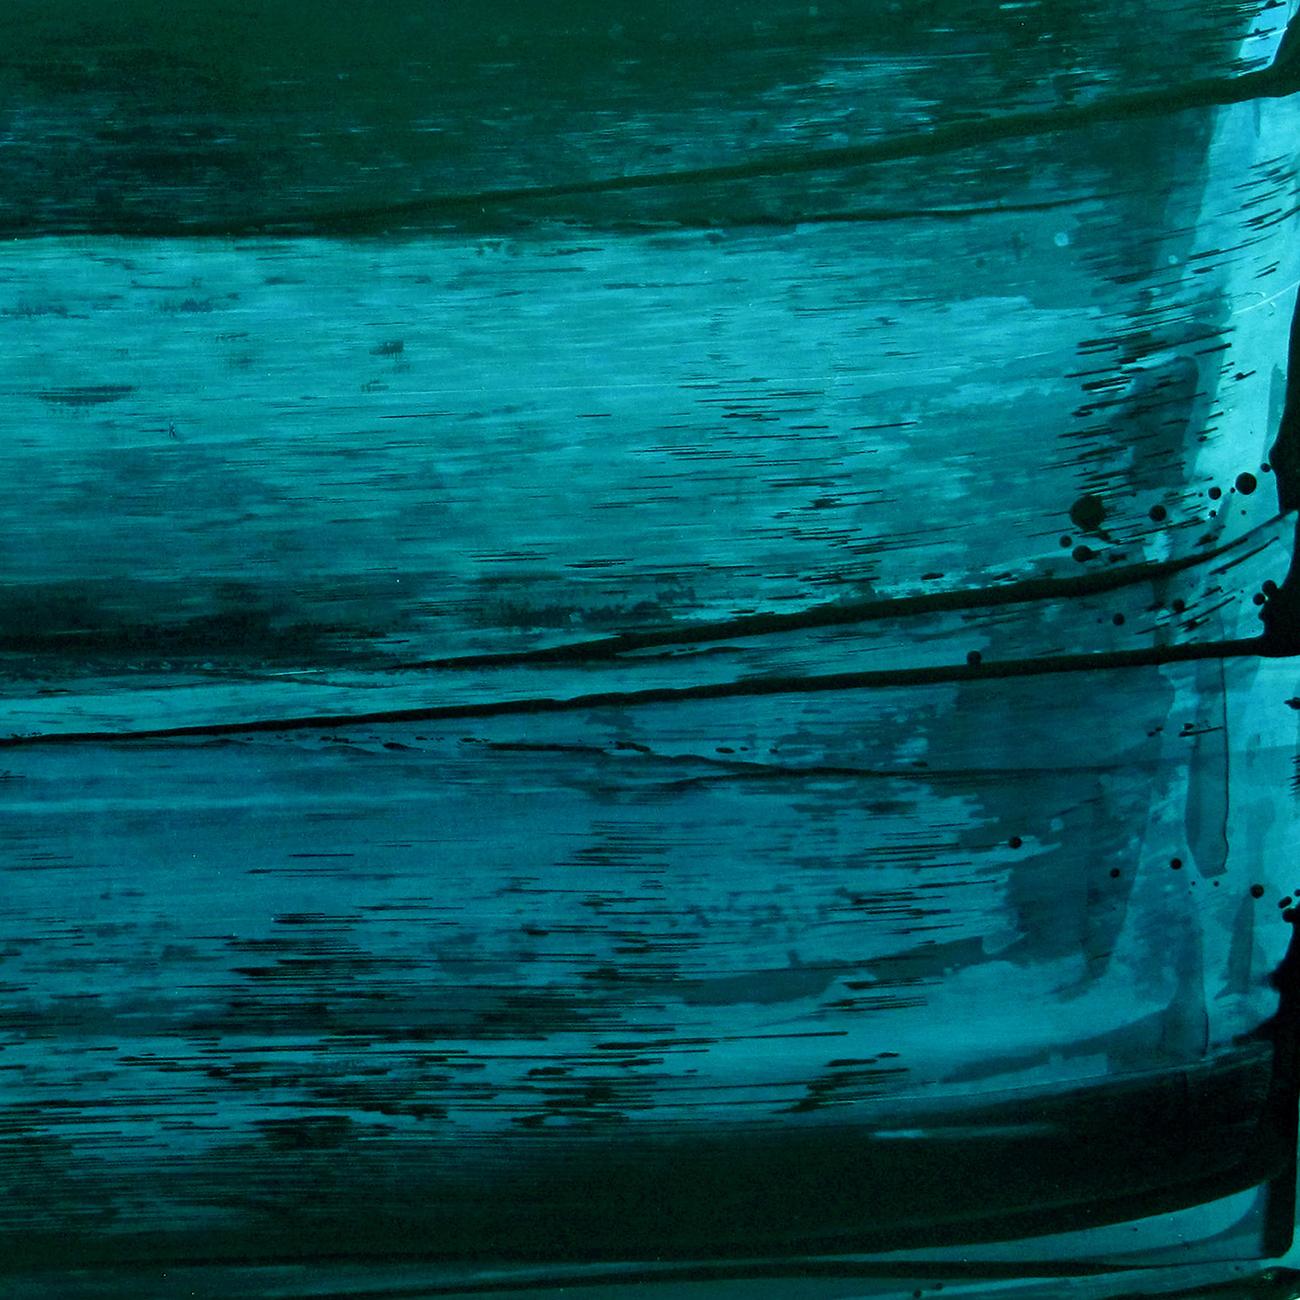 Lumière printanière (verte) (peinture abstraite)
Acrylique sur panneau de bois - Non encadré.

Emma Godebska est une artiste abstraite française qui vit à Nîmes, en France.

Son utilisation de pigments naturels, reflétant la nature elle-même, est en